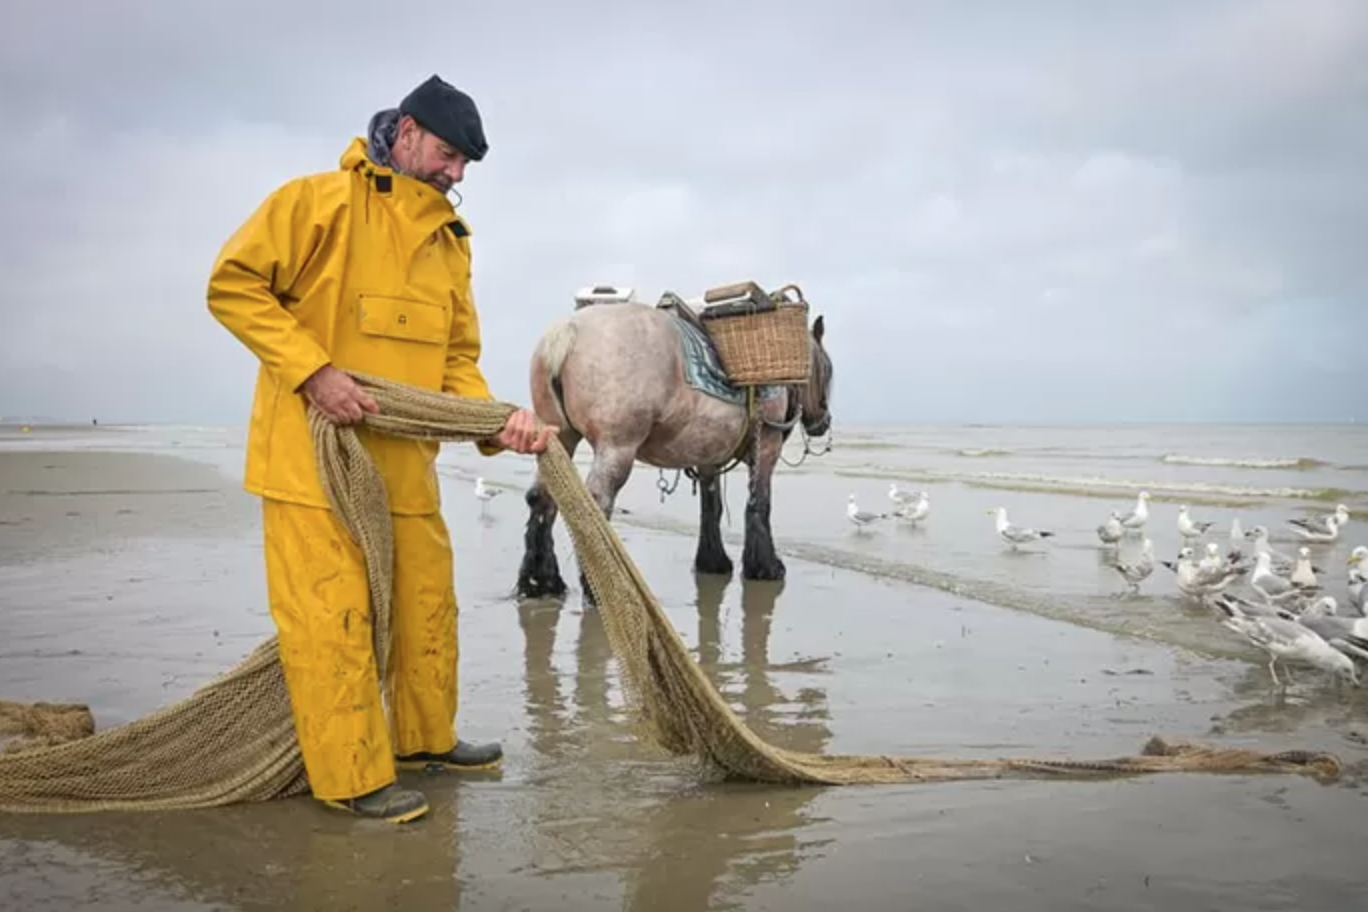 Bekende paardenvisser Johan Vanmassenhove wordt onwel en sterft op paard: “Kon hij kiezen, zou dit wellicht zijn mooiste dood zijn”